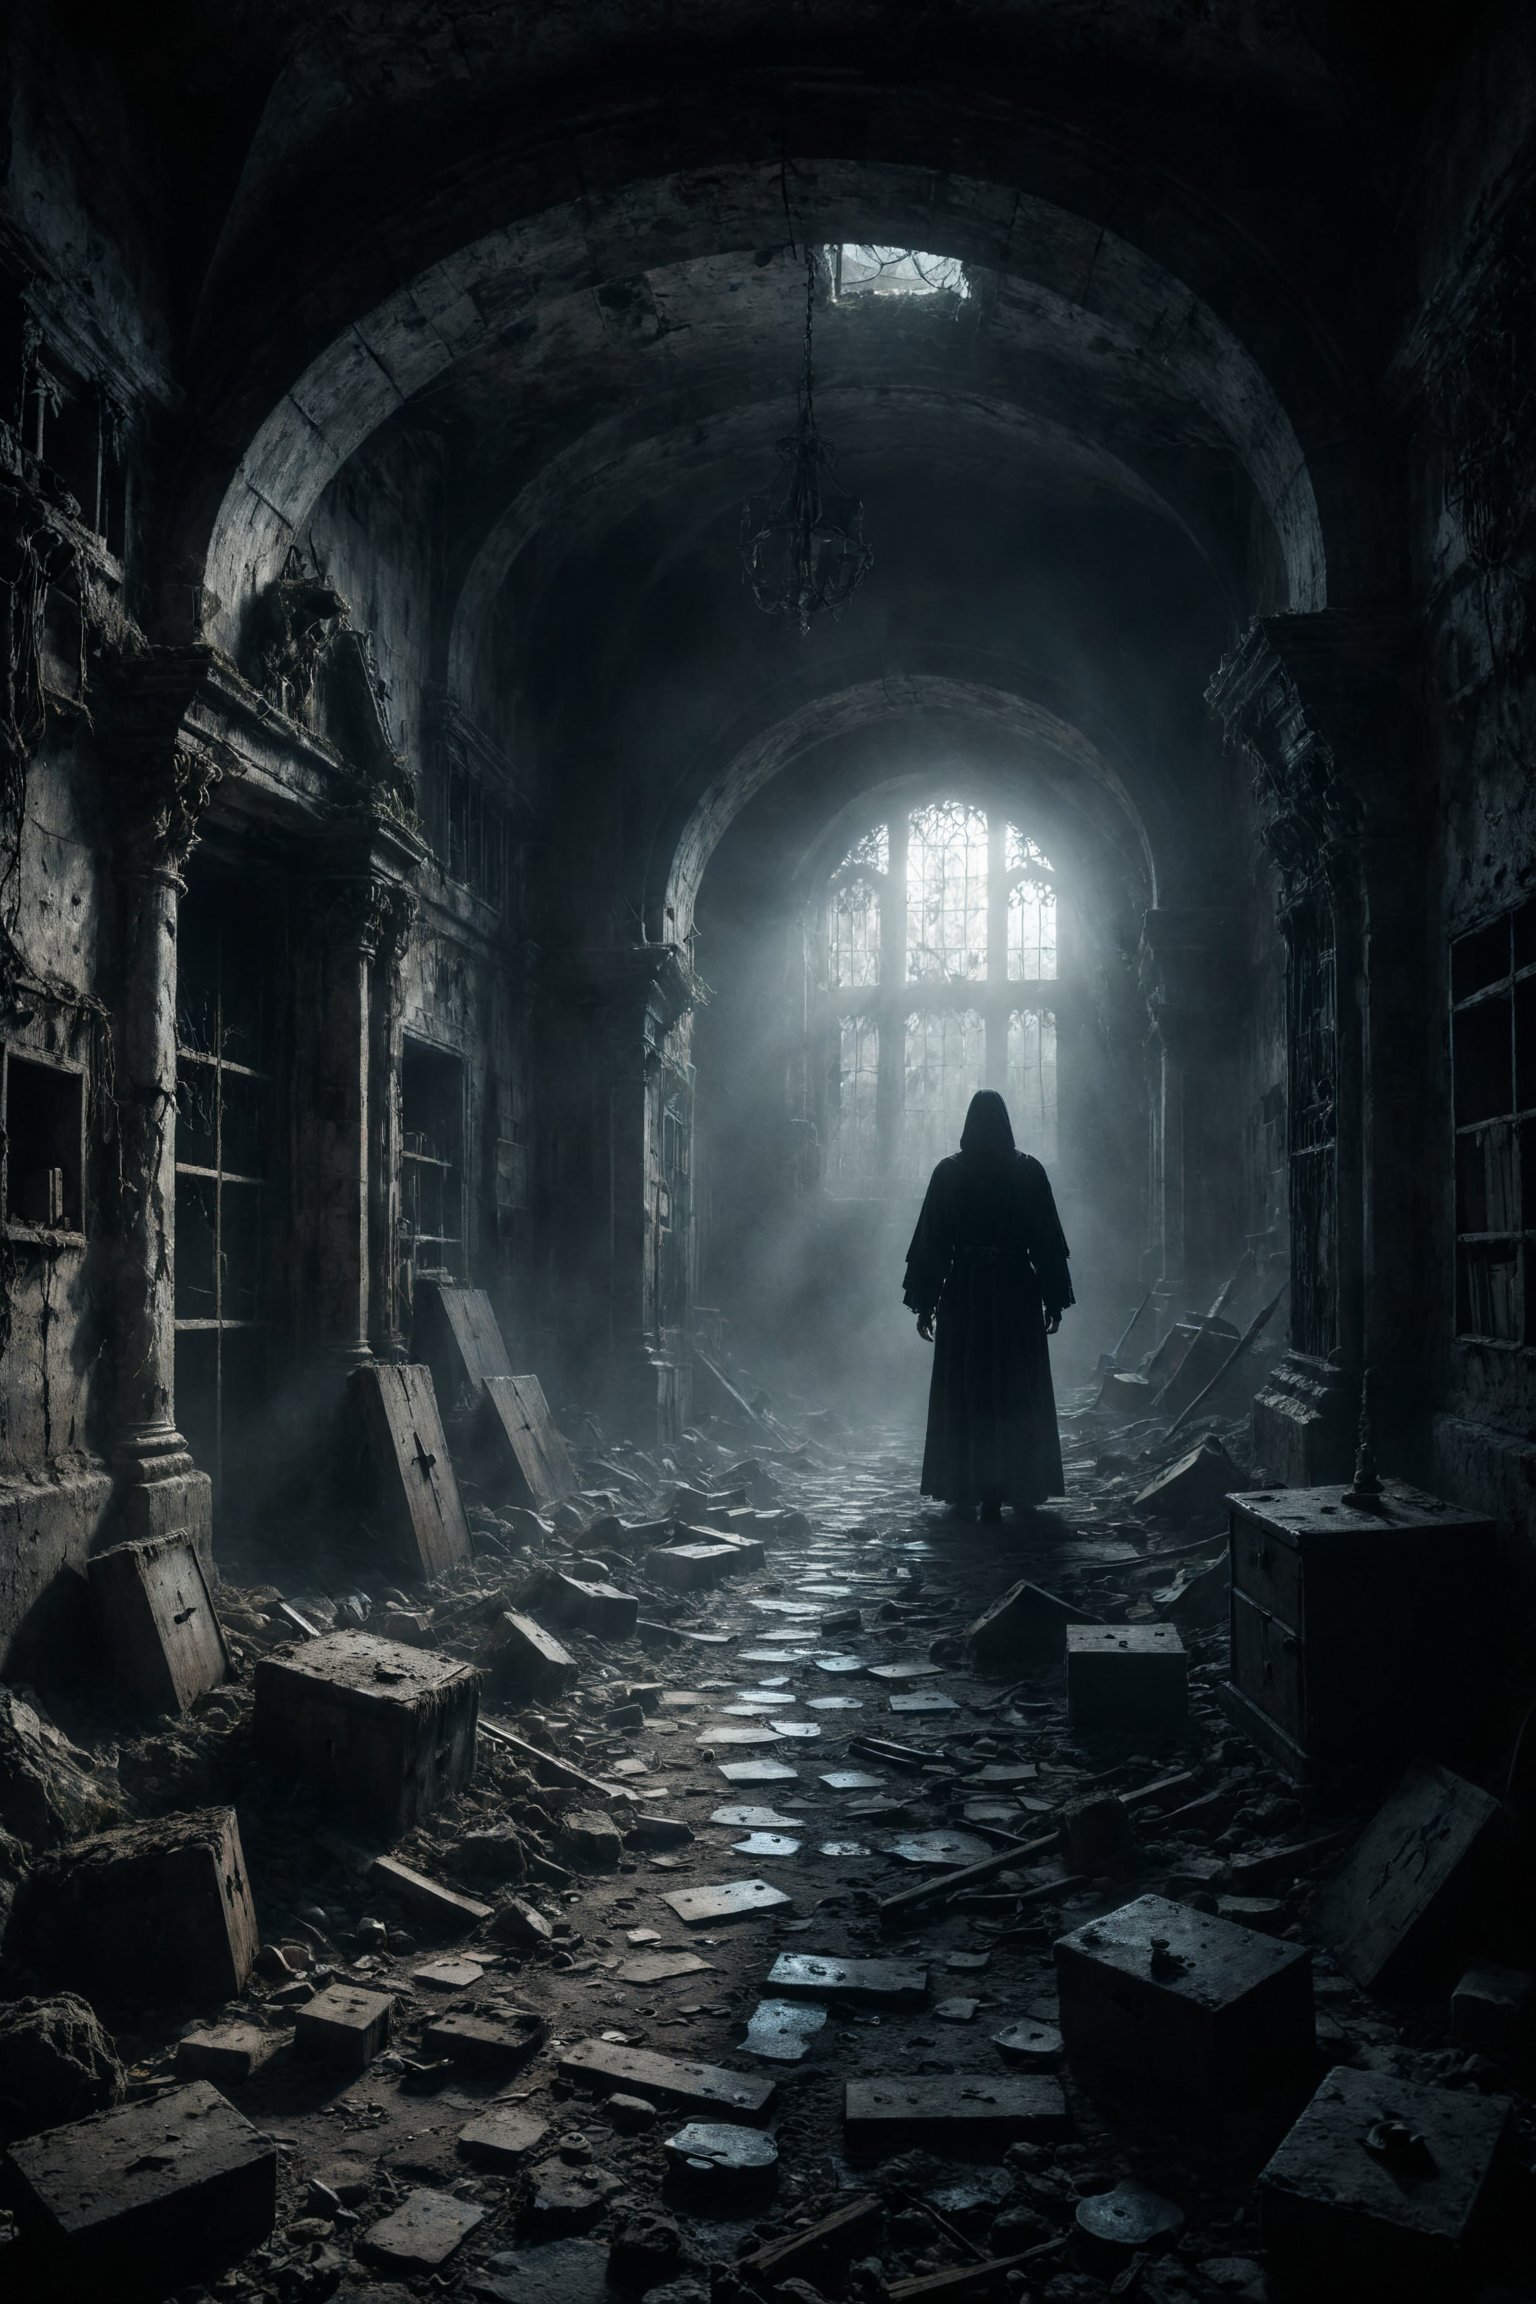 mitica y misteriosa escena gotica de Un laberinto de pasillos estrechos y sombríos donde resonan voces susurrantes que guían o confunden.